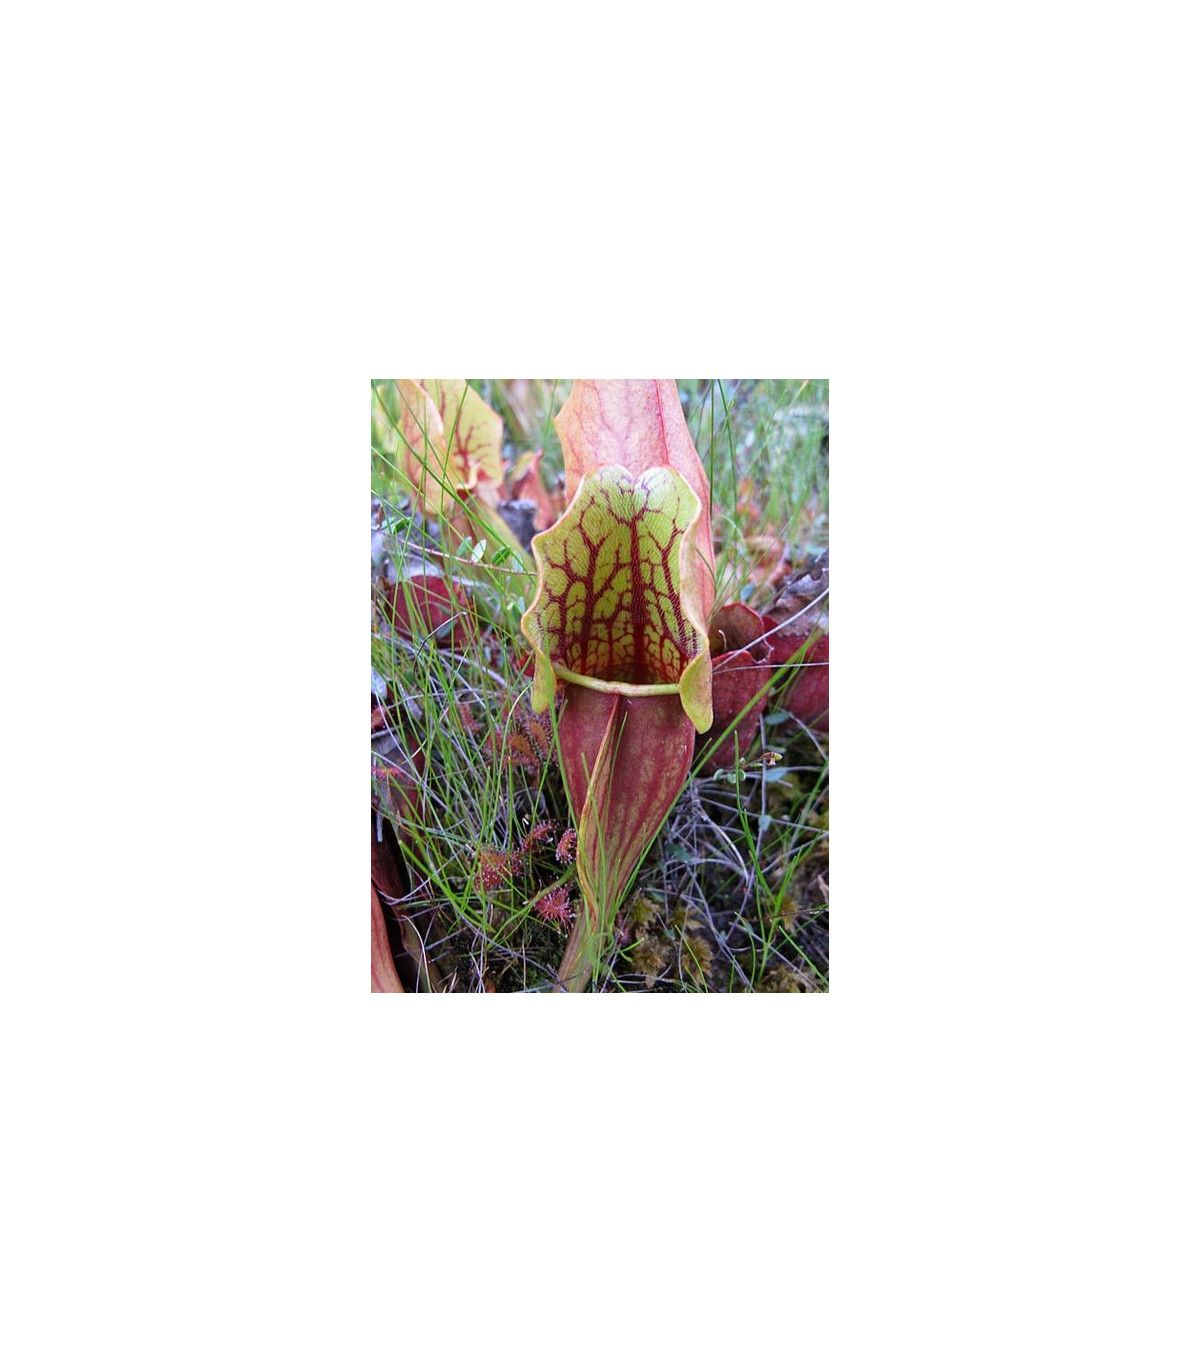 Špirlica purpurová extra veľká - Sarracenia purpurea - semená špirlice - semiačka - 12 ks